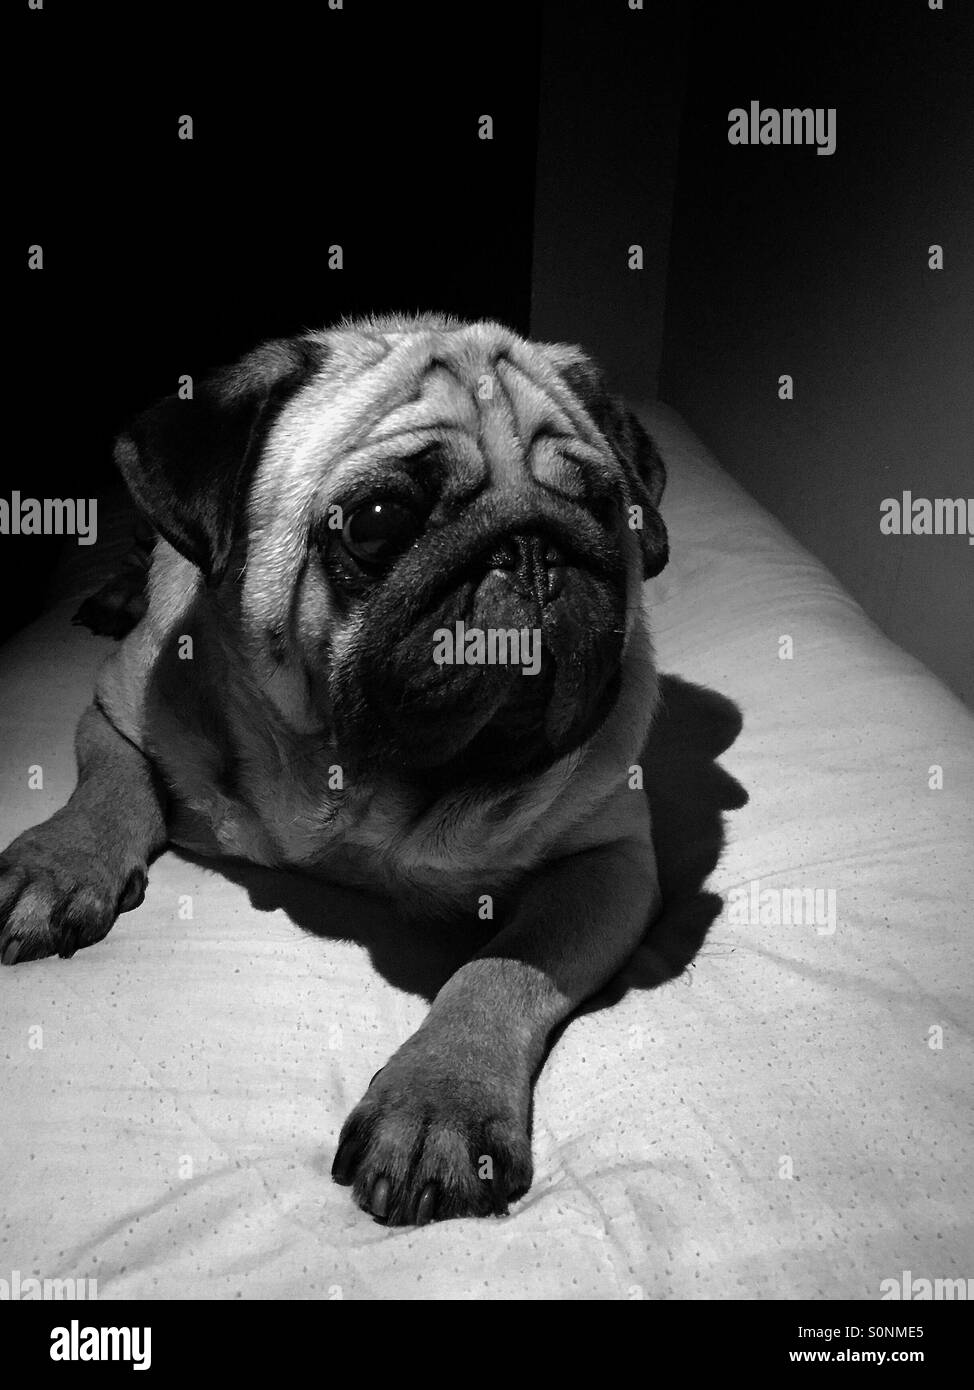 Snapseed Imágenes de stock en blanco y negro - Alamy